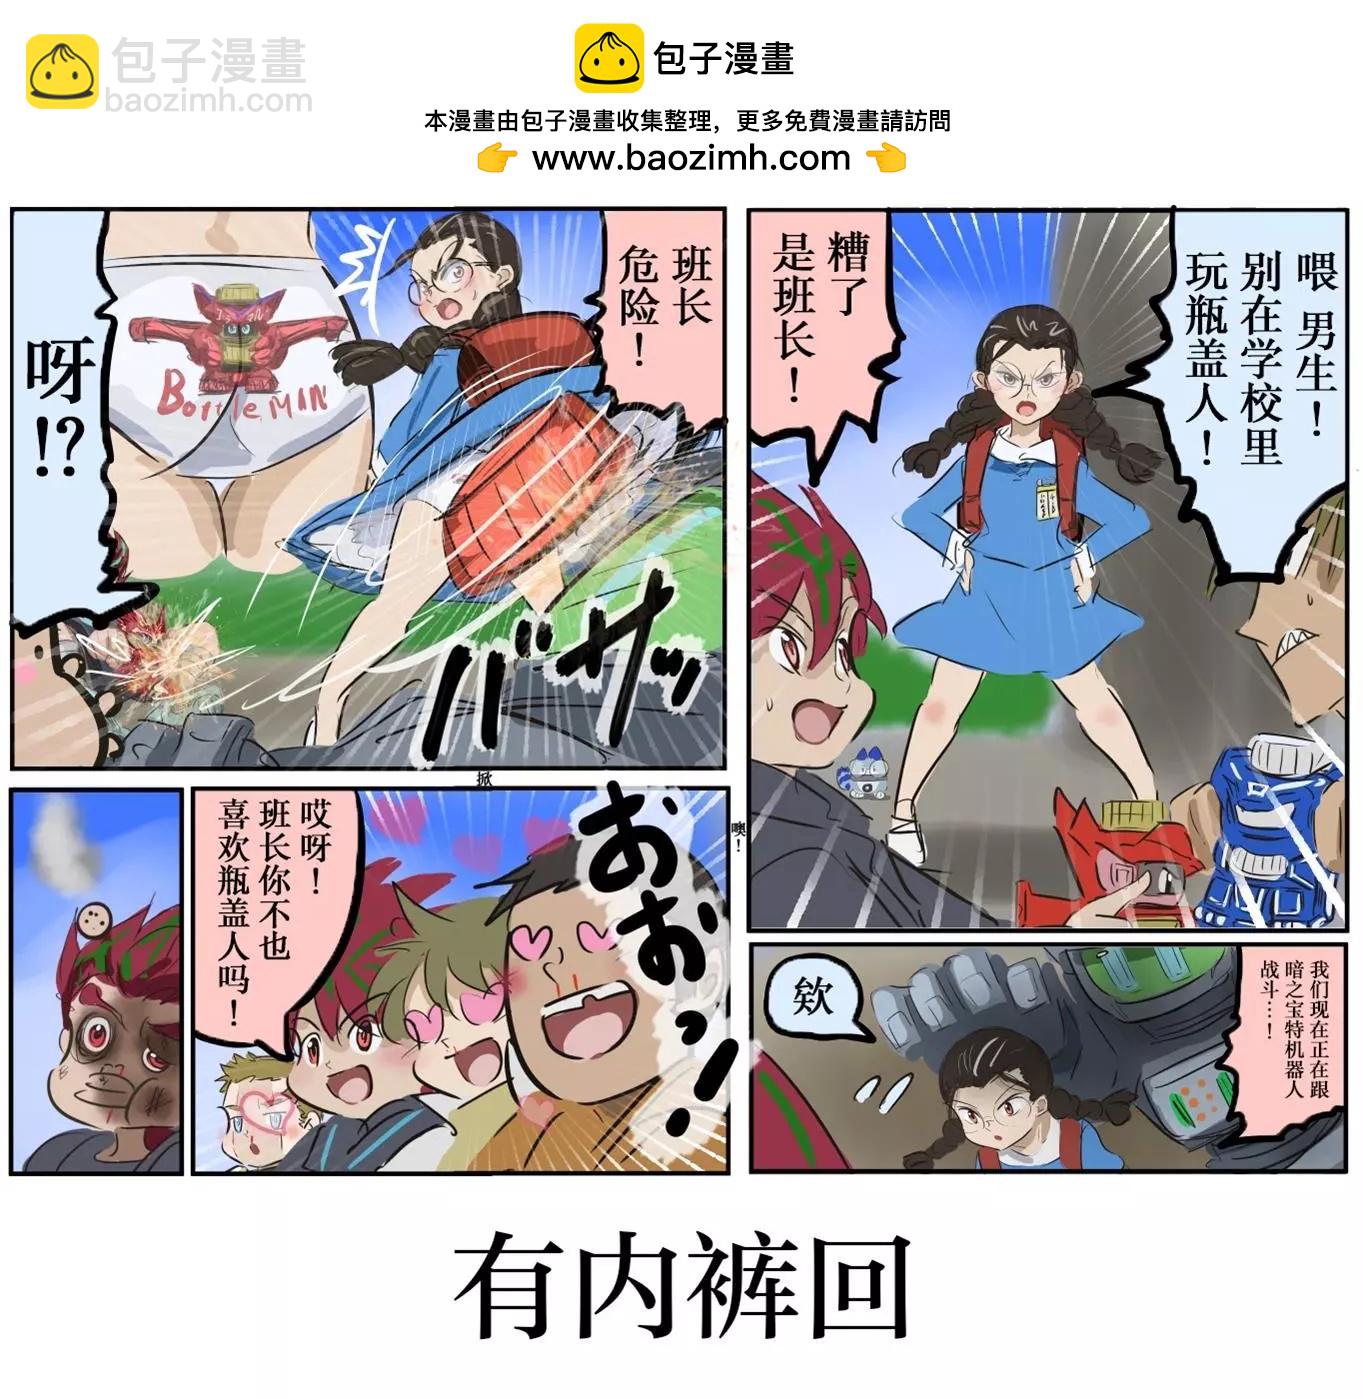 カコミスル老師四格合集 - 平成廣告漫畫風瓶蓋人（其5） - 1